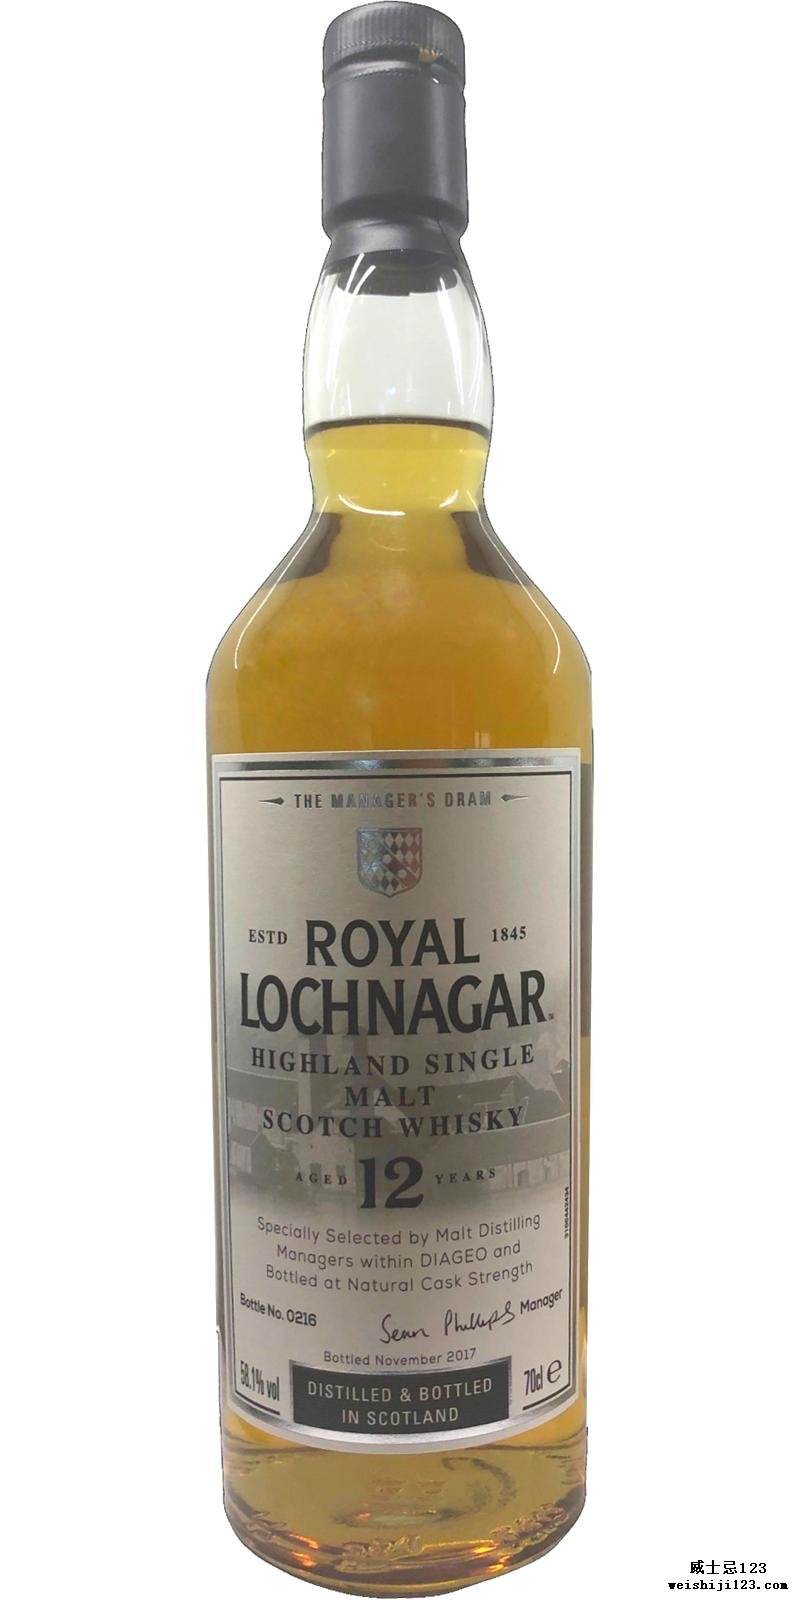 Royal Lochnagar 12-year-old